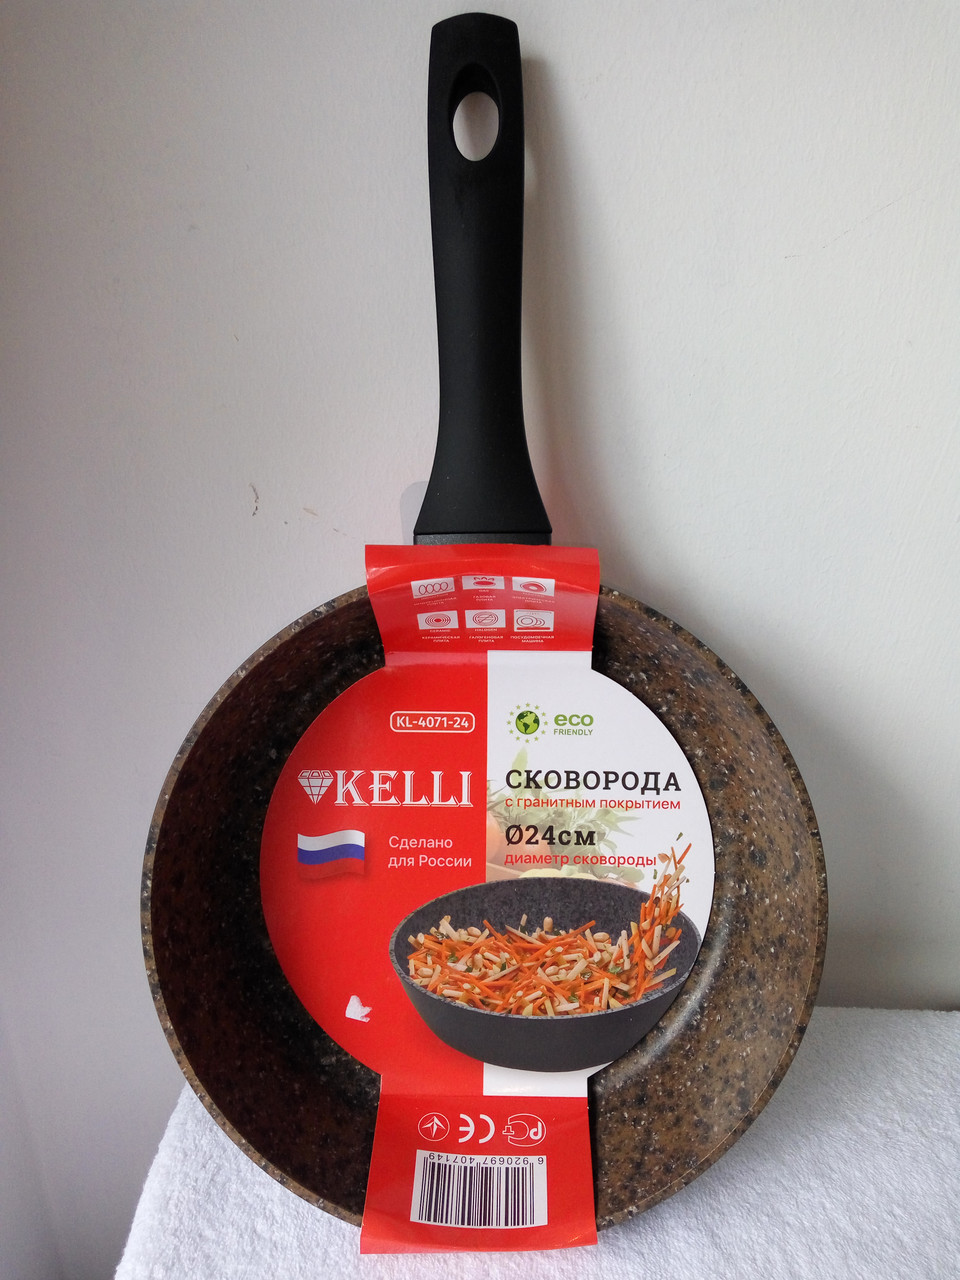 Сковорода с гранитным покрытием Kelli, 24см